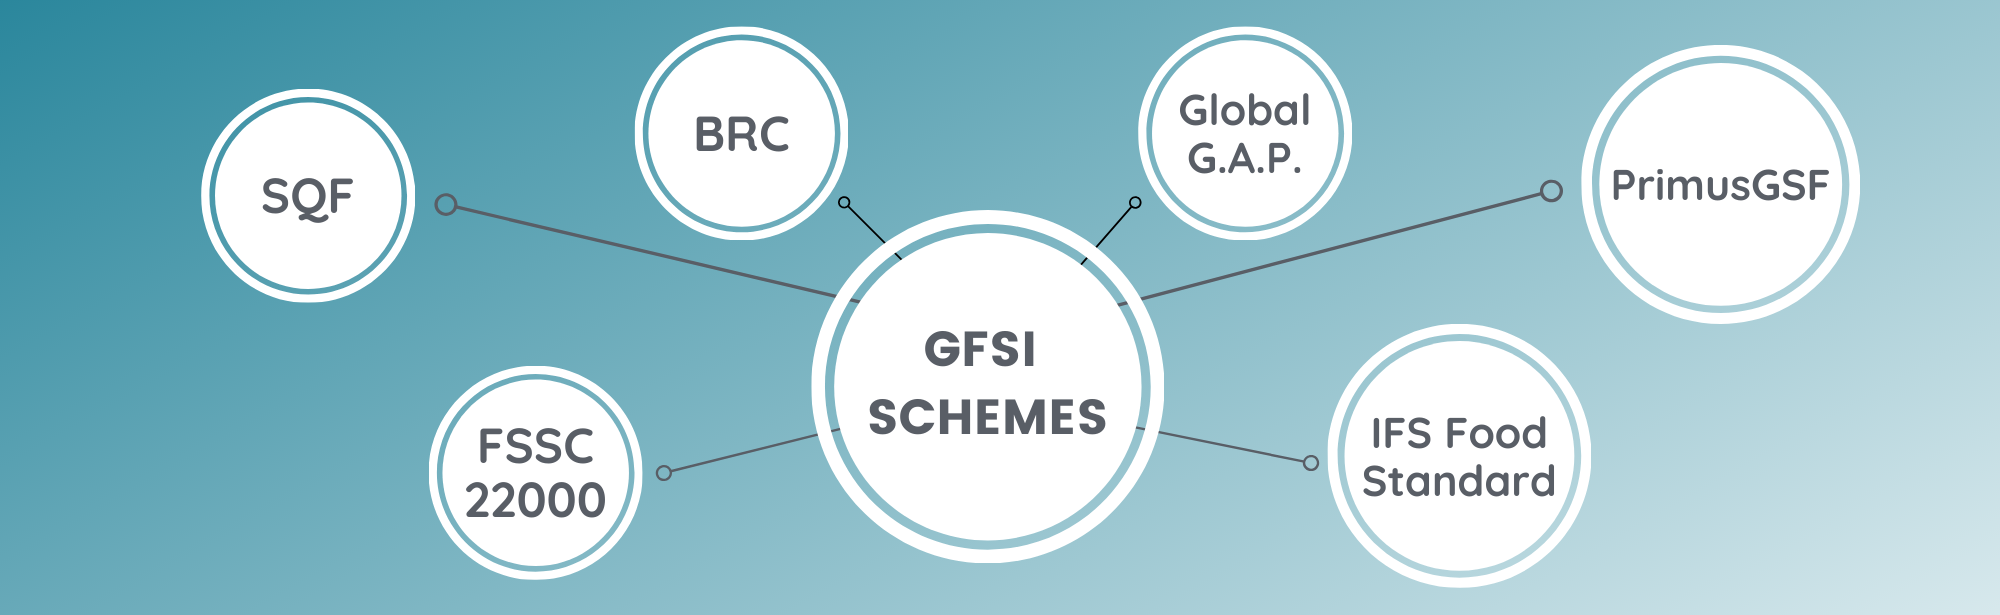 A Guide to Choosing Between GFSI Schemes